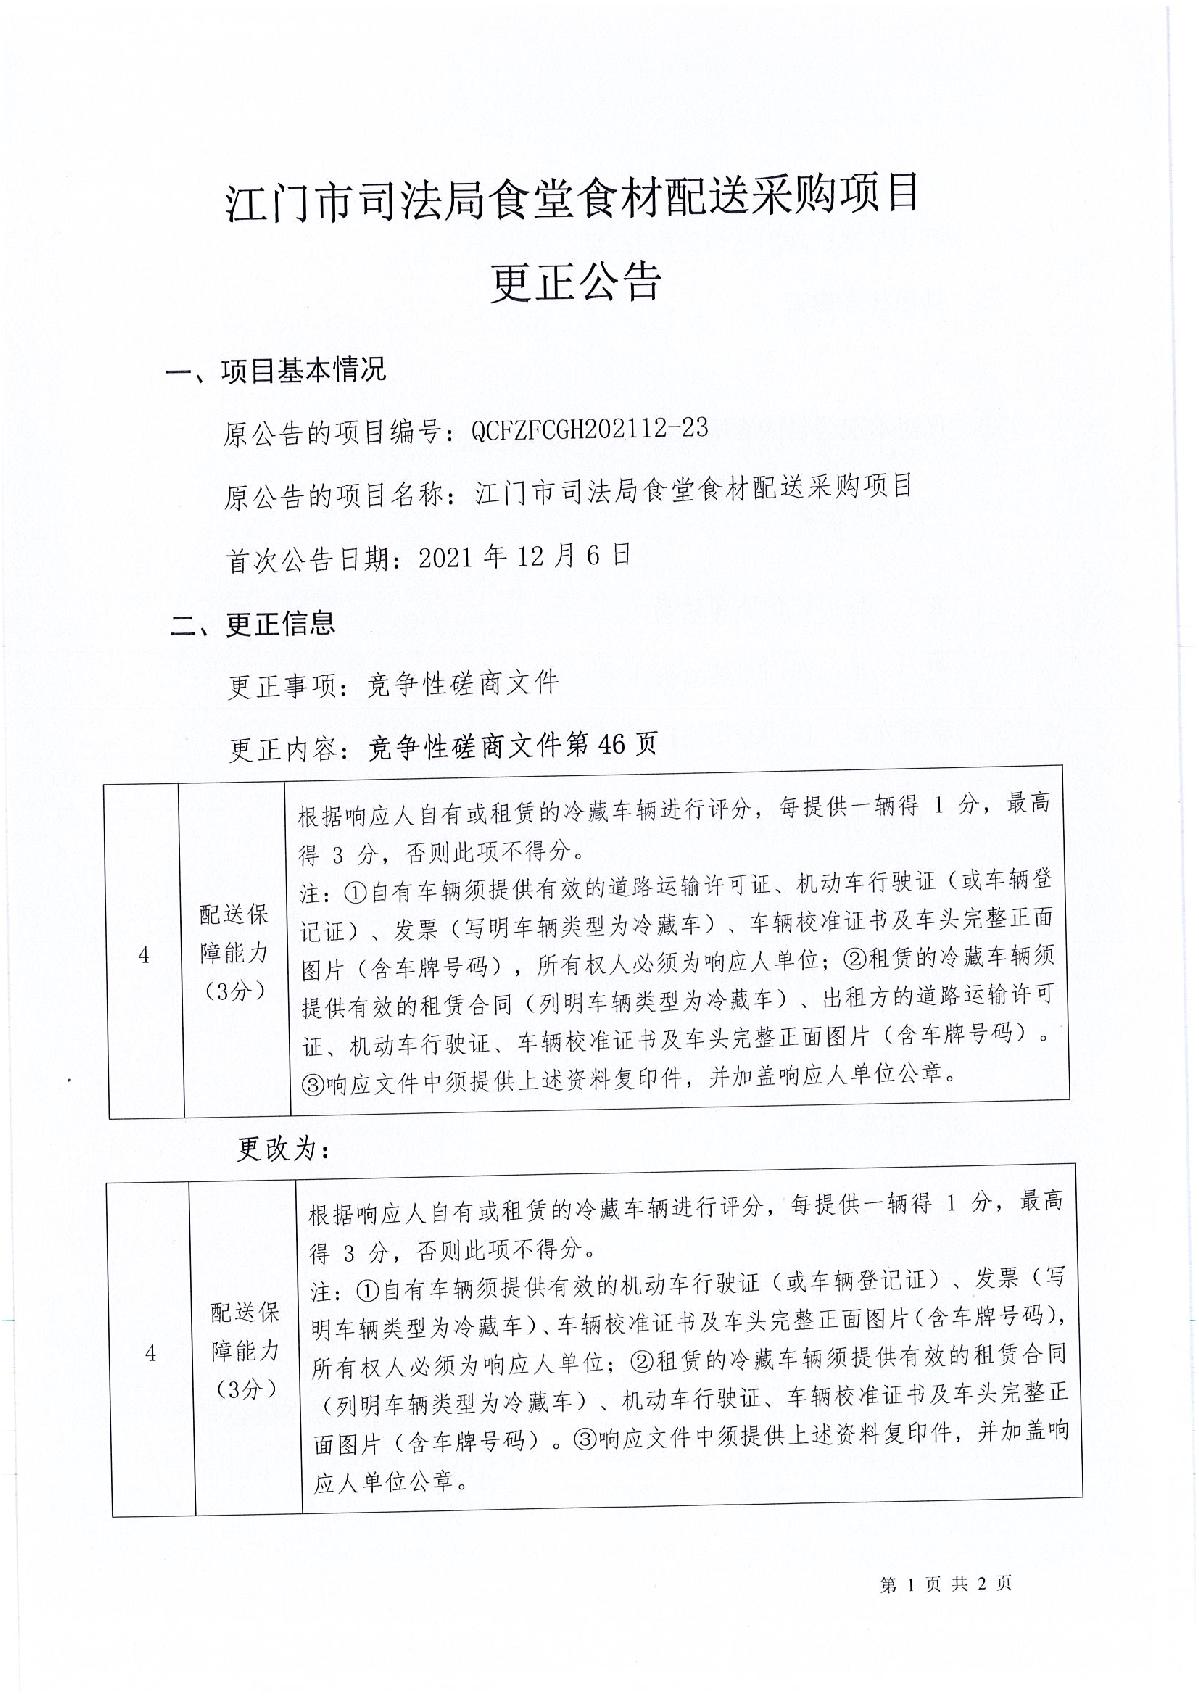 更正公告江门市司法局食堂食材配送采购项目_1.JPG